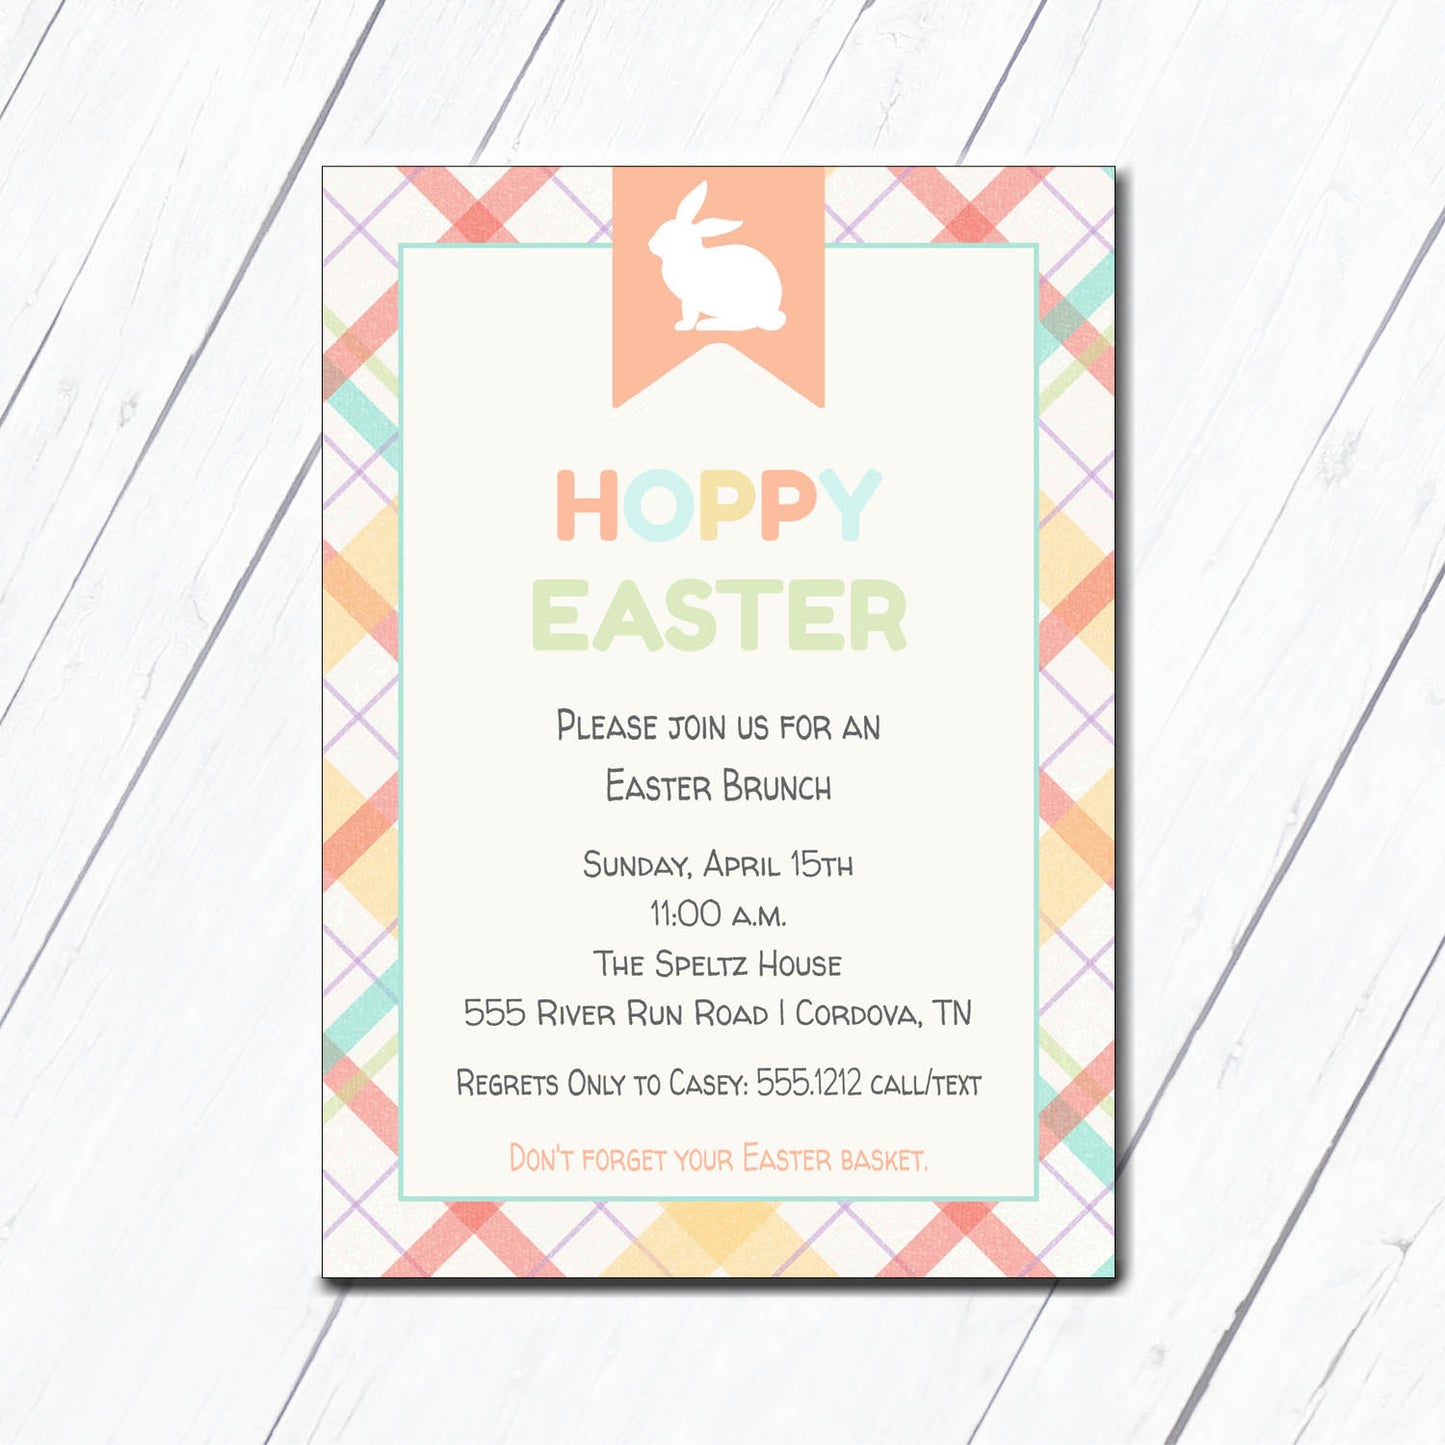 Hoppy Easter Invitation